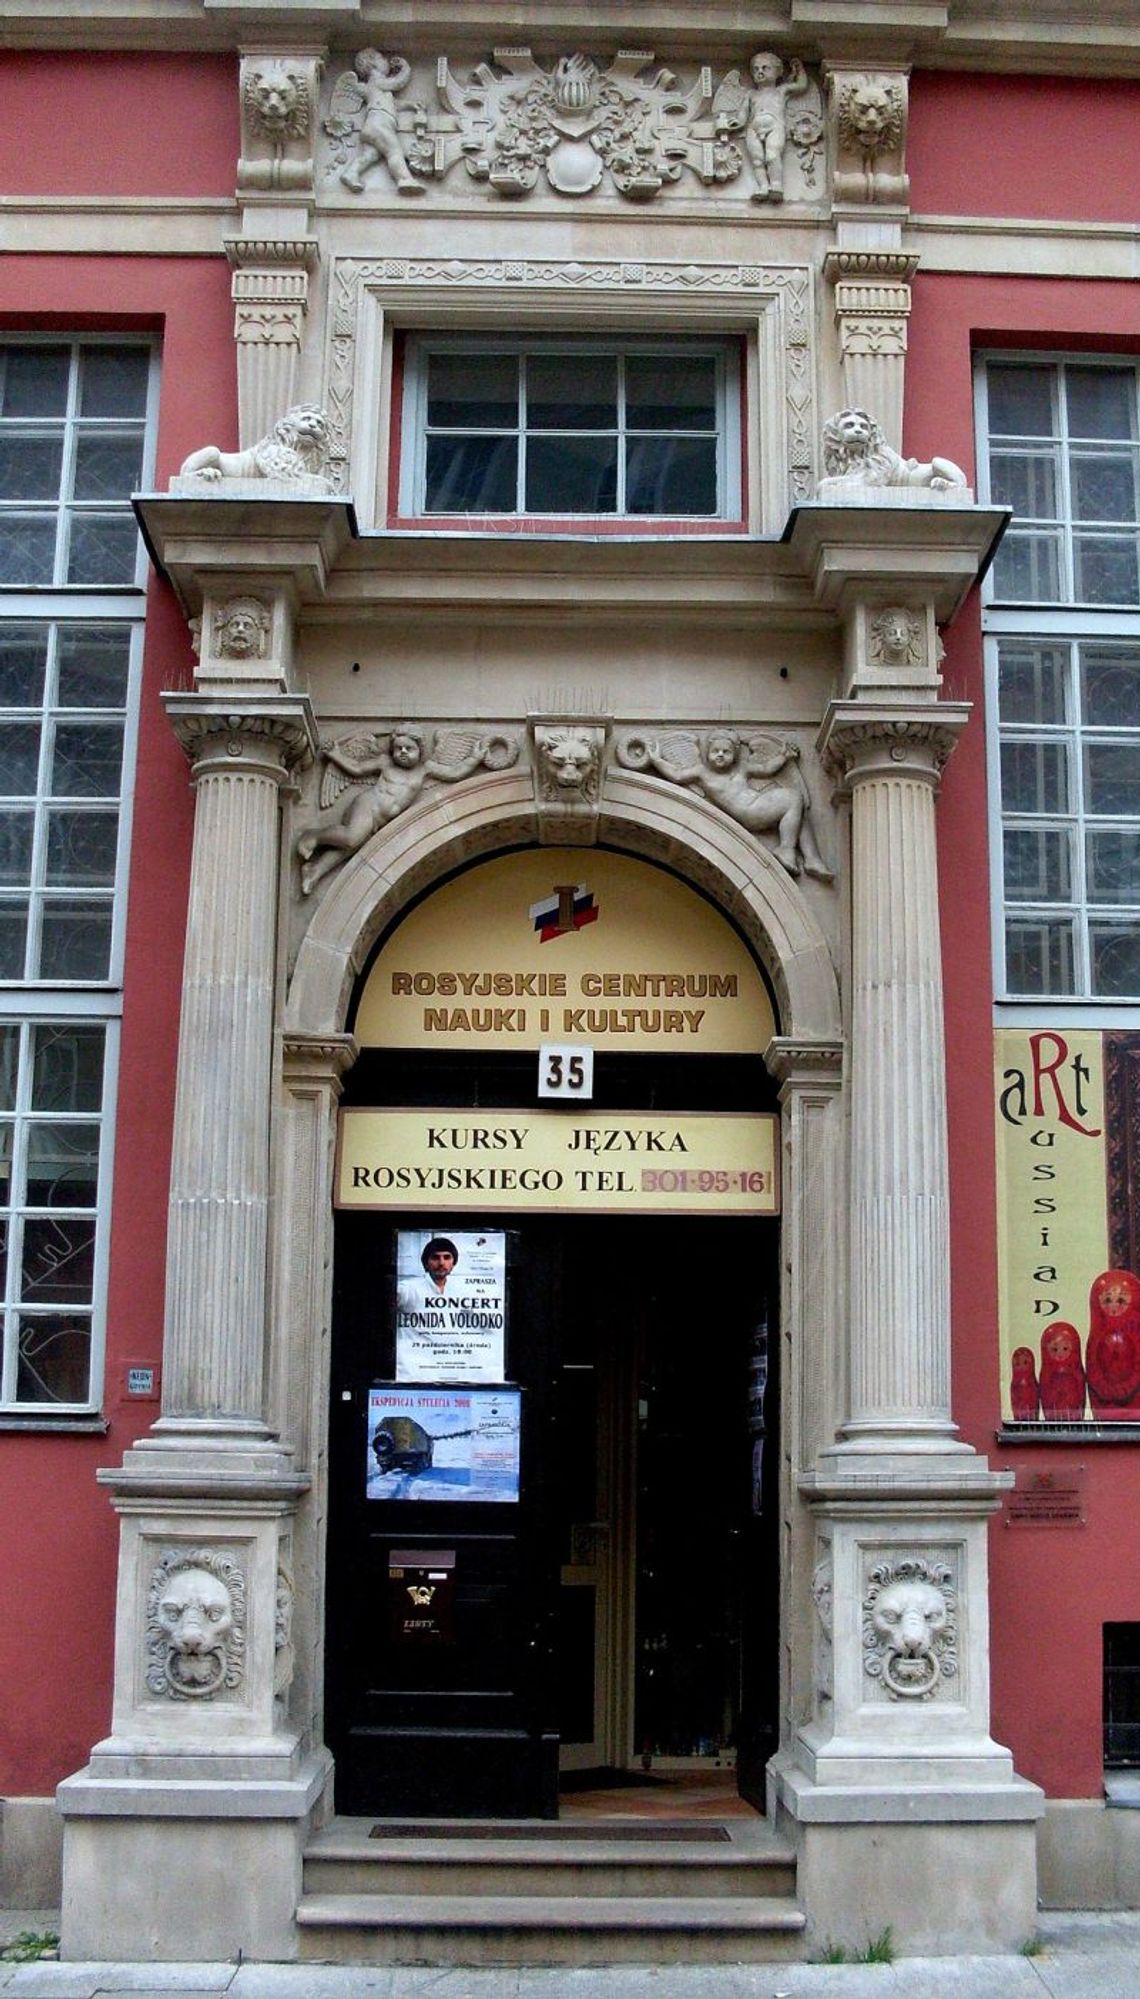 Miasto Gdańsk nie przedłużyło umowy najmu z Rosyjskim Centrum Nauki i Kultury